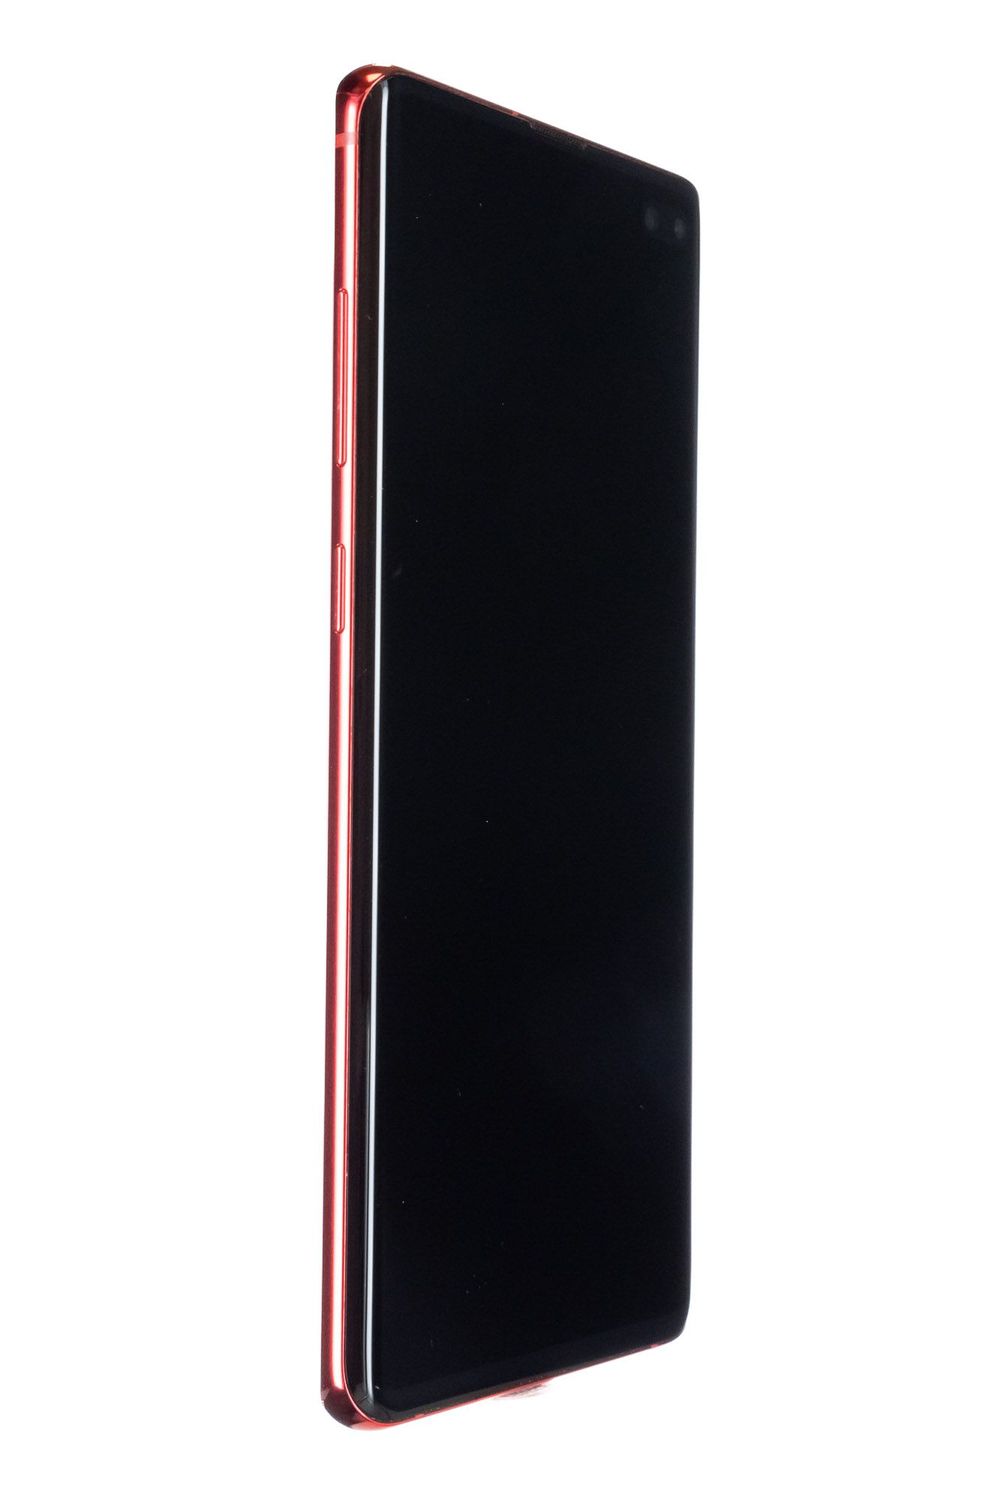 Κινητό τηλέφωνο Samsung Galaxy S10 Plus, Cardinal Red, 1 TB, Bun